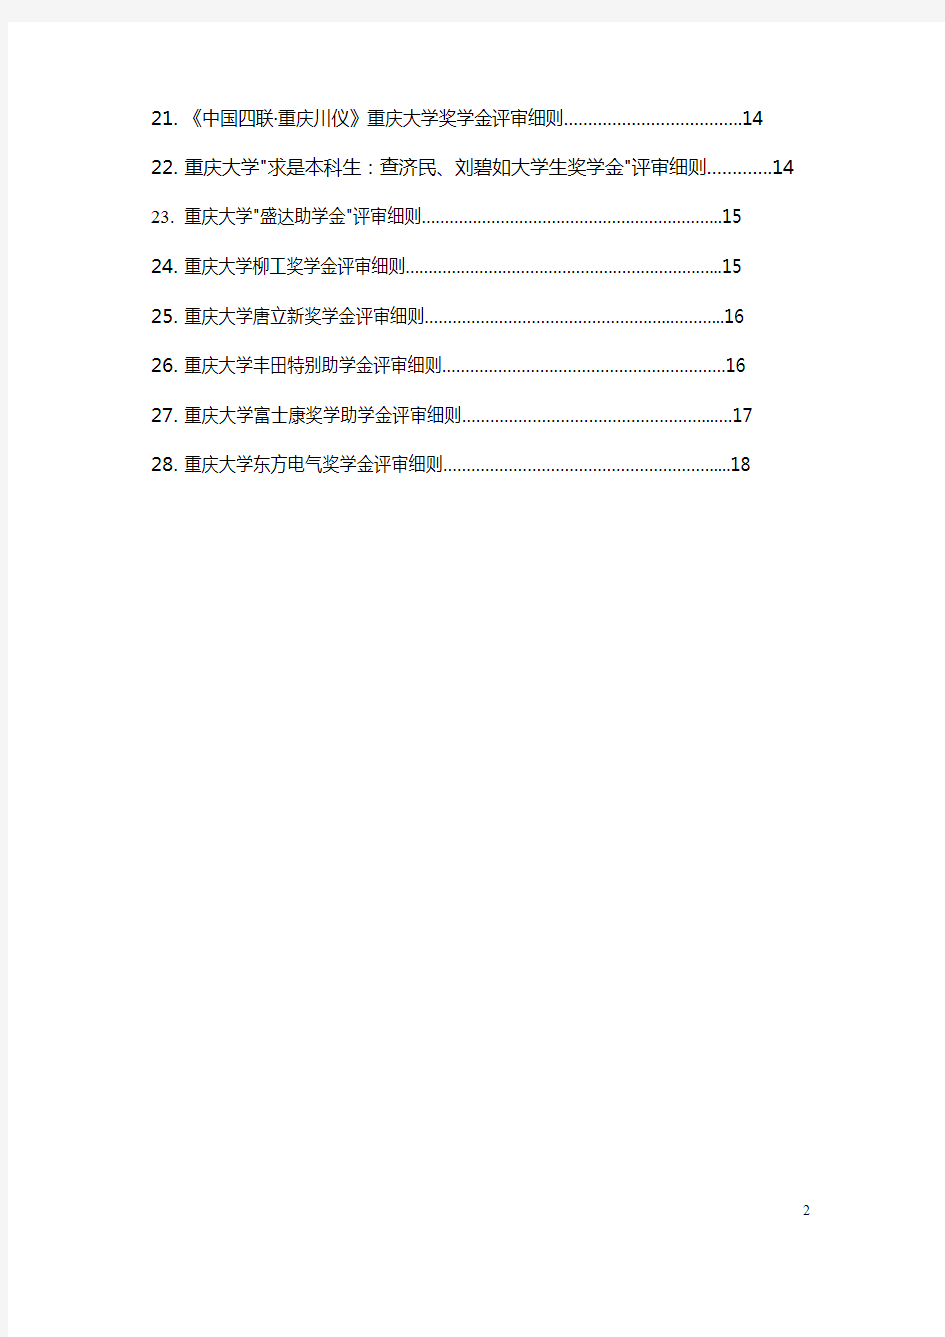 重庆大学单项奖学金评定细则